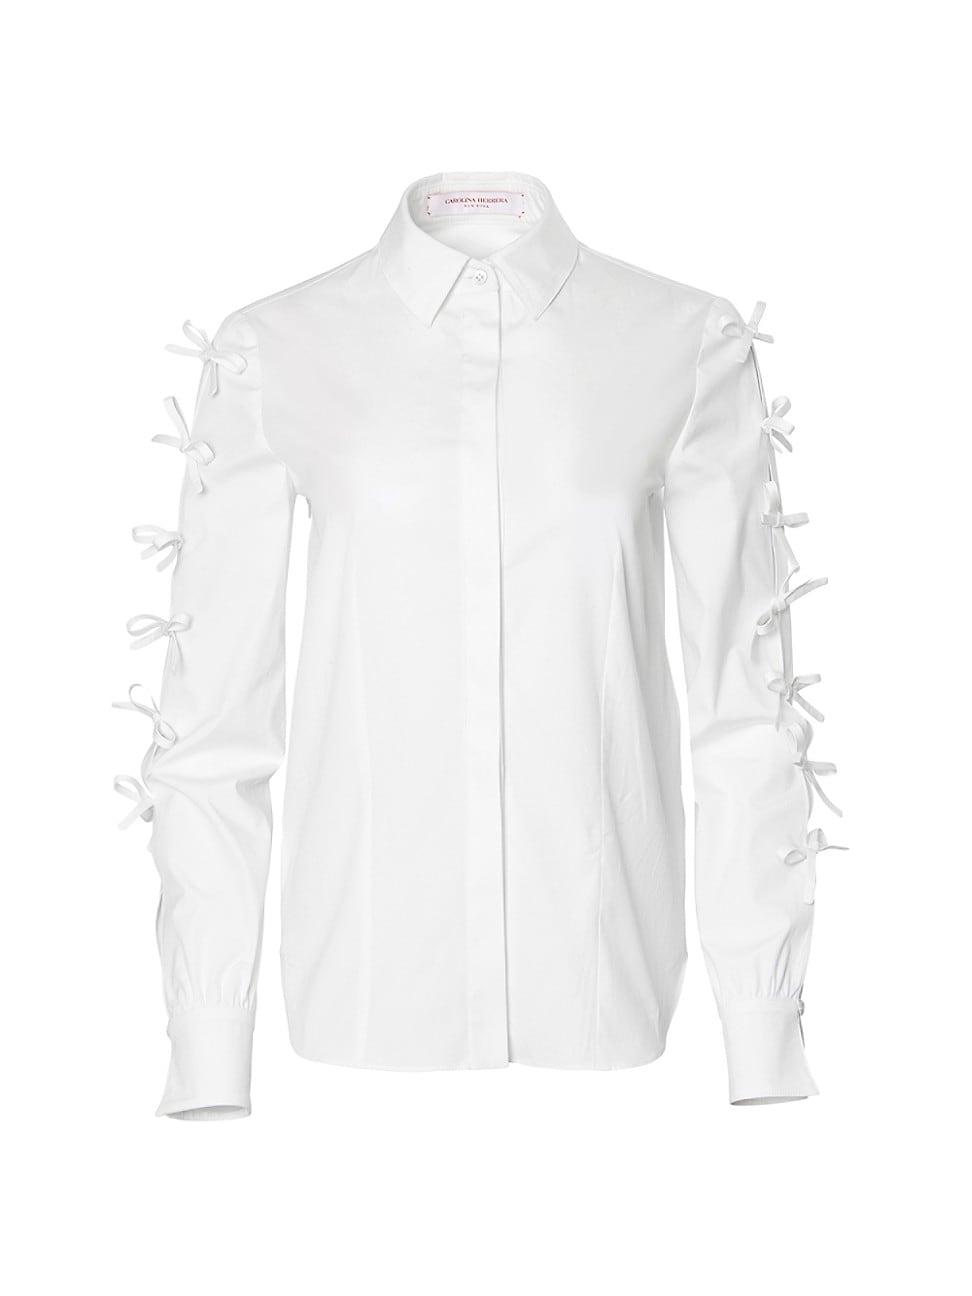 Carolina Herrera Bow-detailed Shirt in White | Lyst